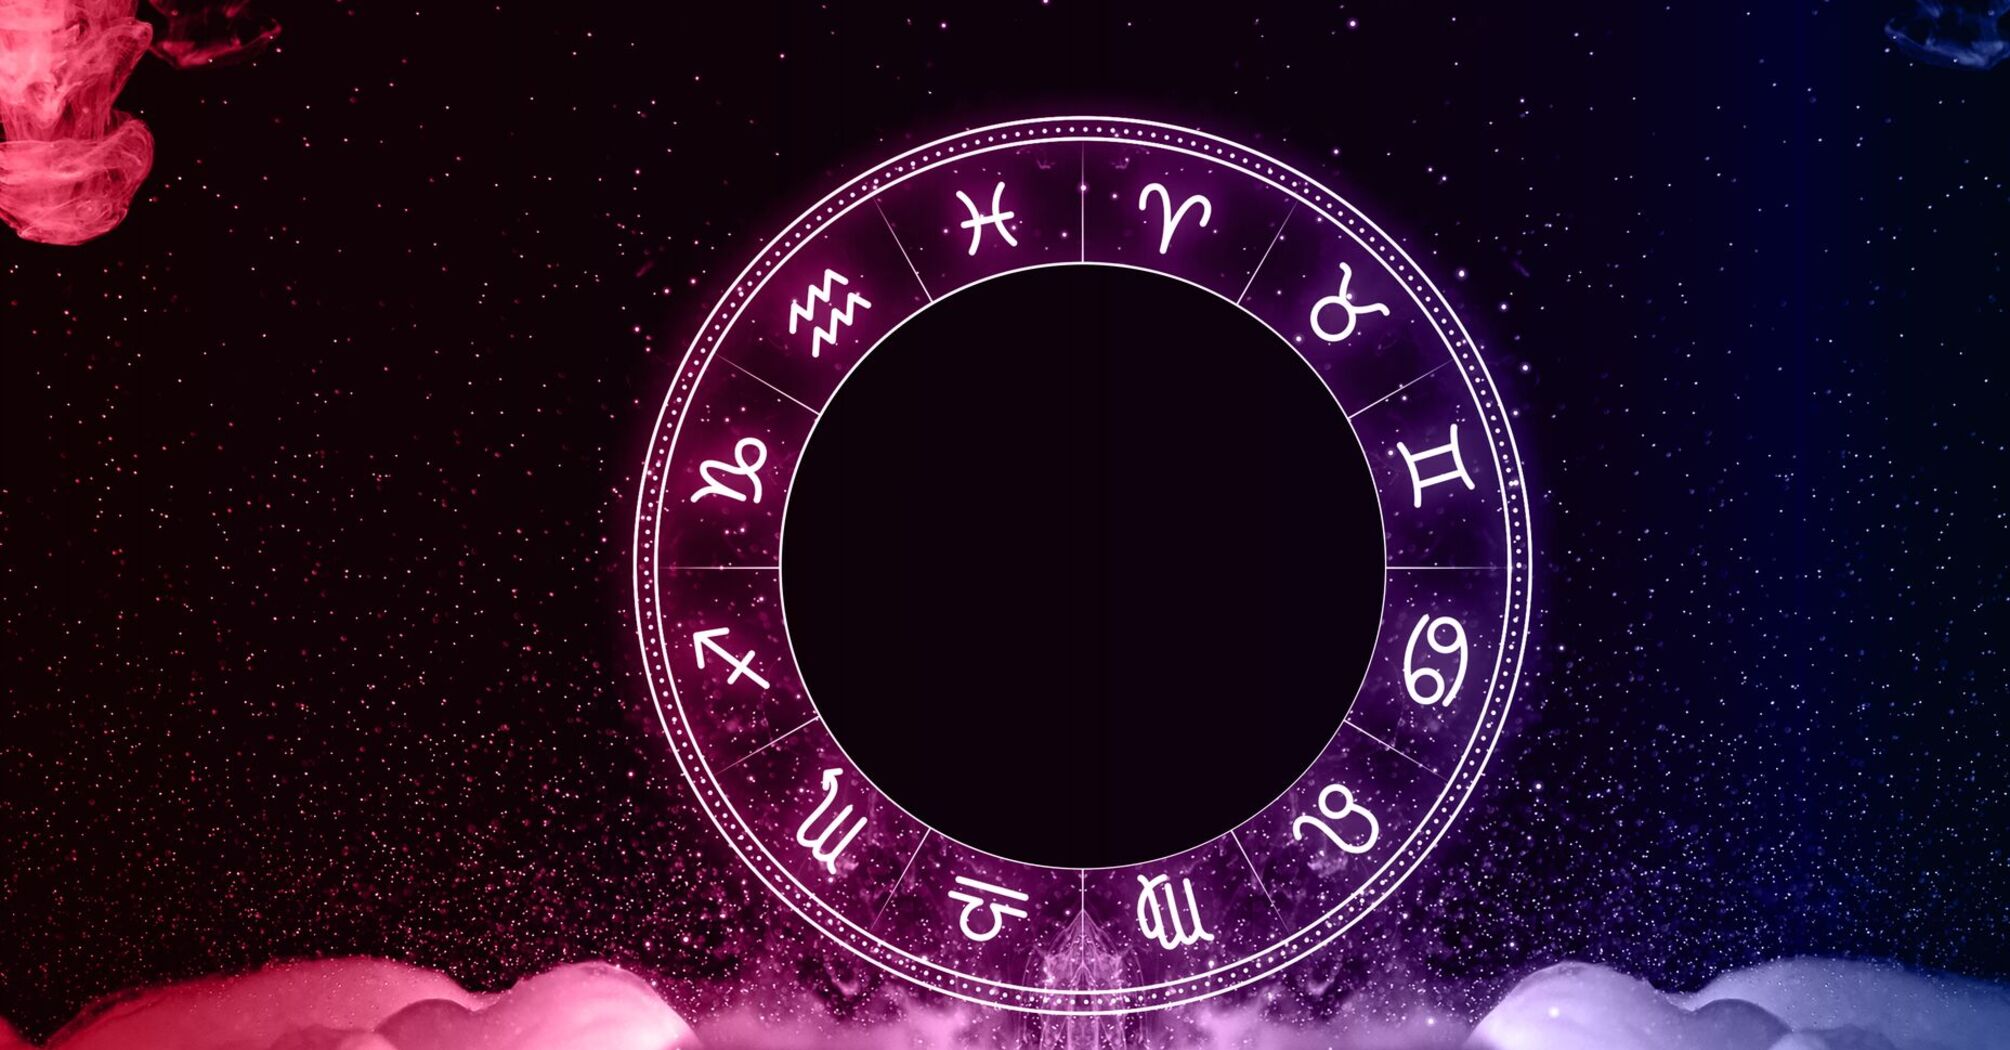 Предстоят уникальные возможности и вызовы для каждого знака зодиака: гороскоп на 28 февраля